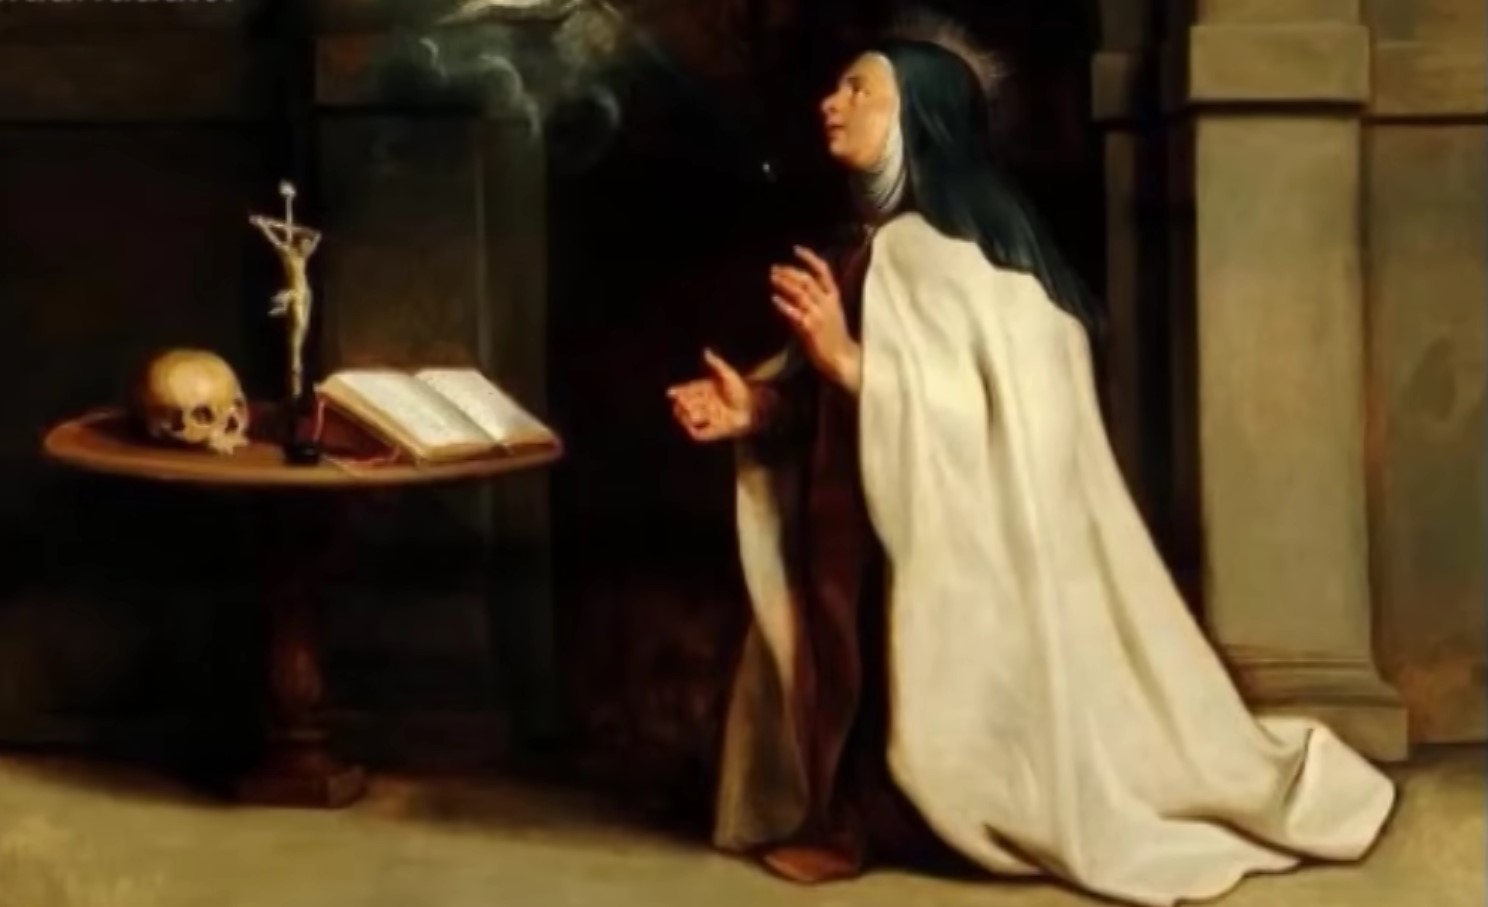 Sărbătoarea bisericească 15 octombrie: sărbătoarea Sfintei Tereza de Avila